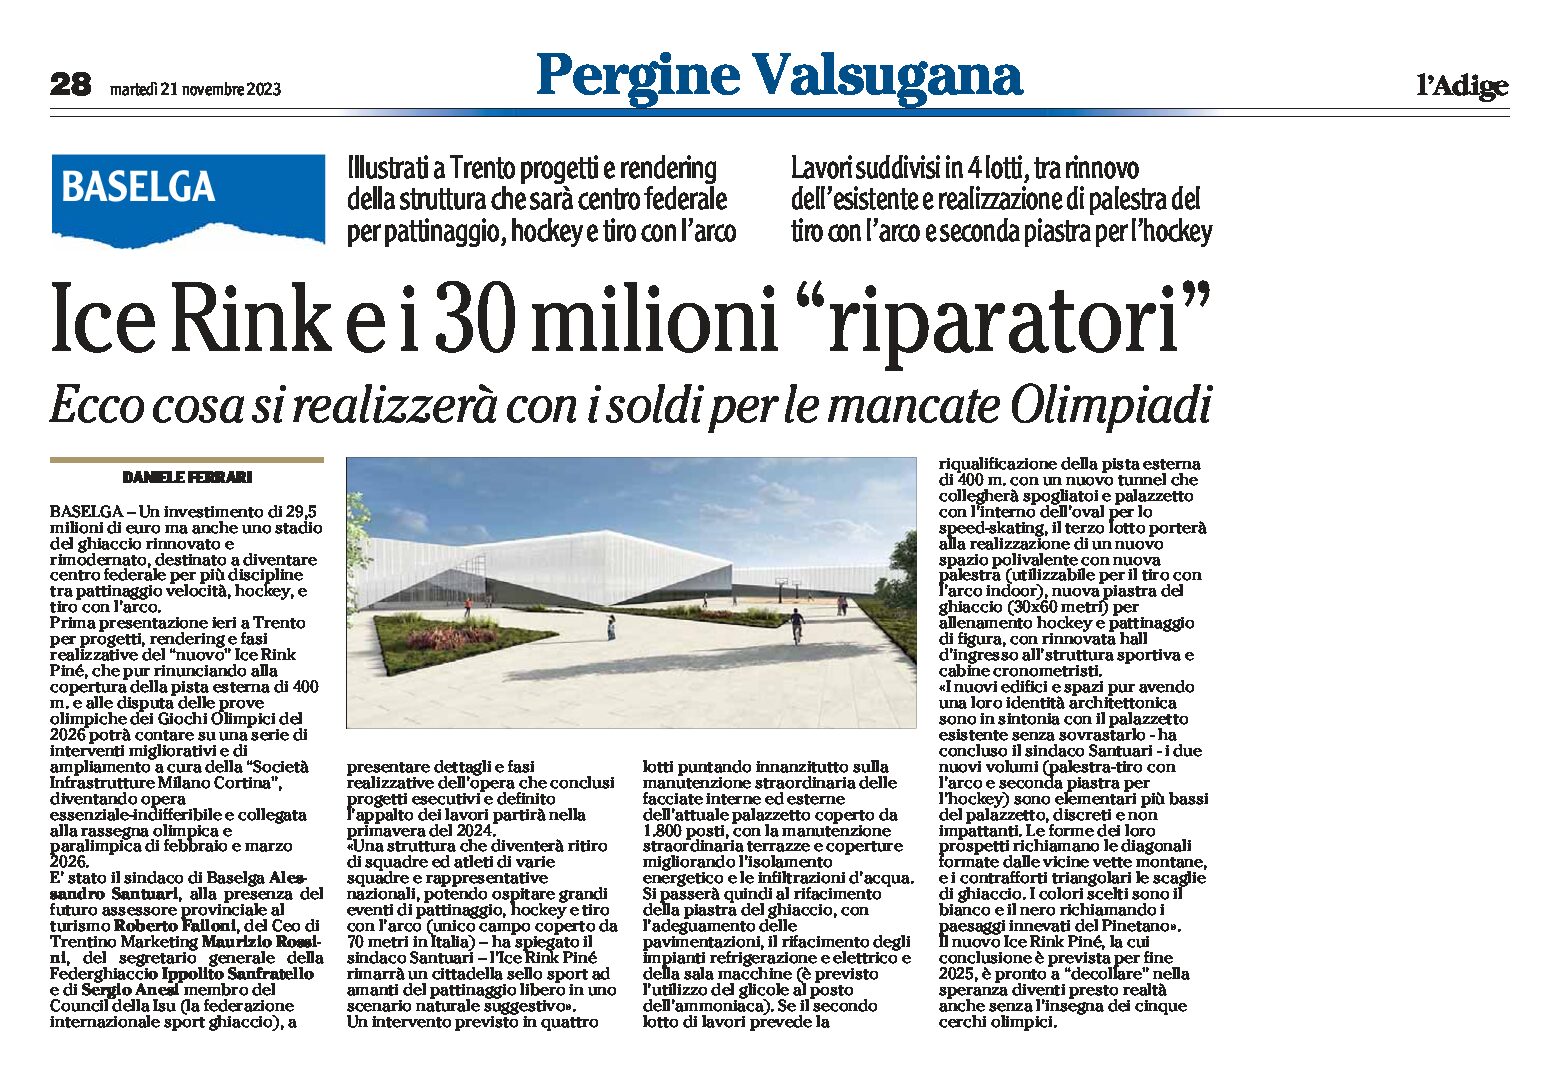 Baselga: Ice Rink e i 30 milioni “riparatori”